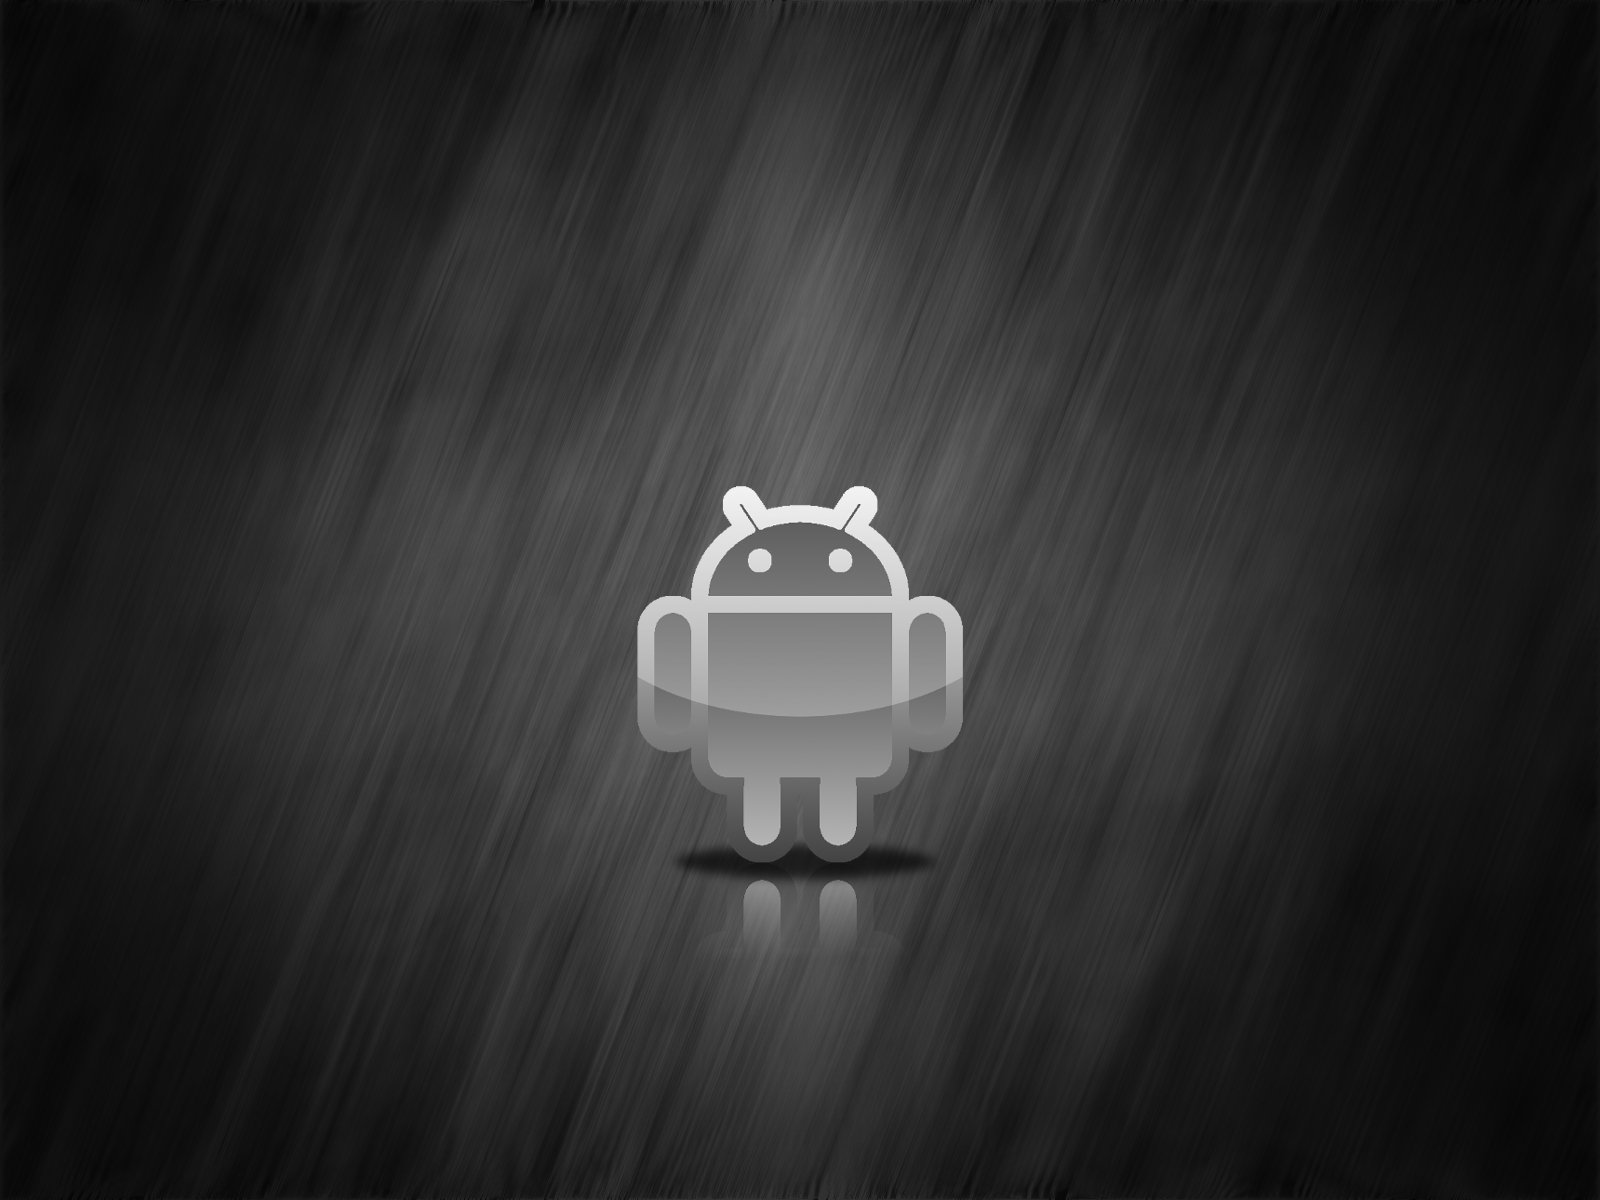 Dark Android Wallpapers Hd | Pixelstalk.net